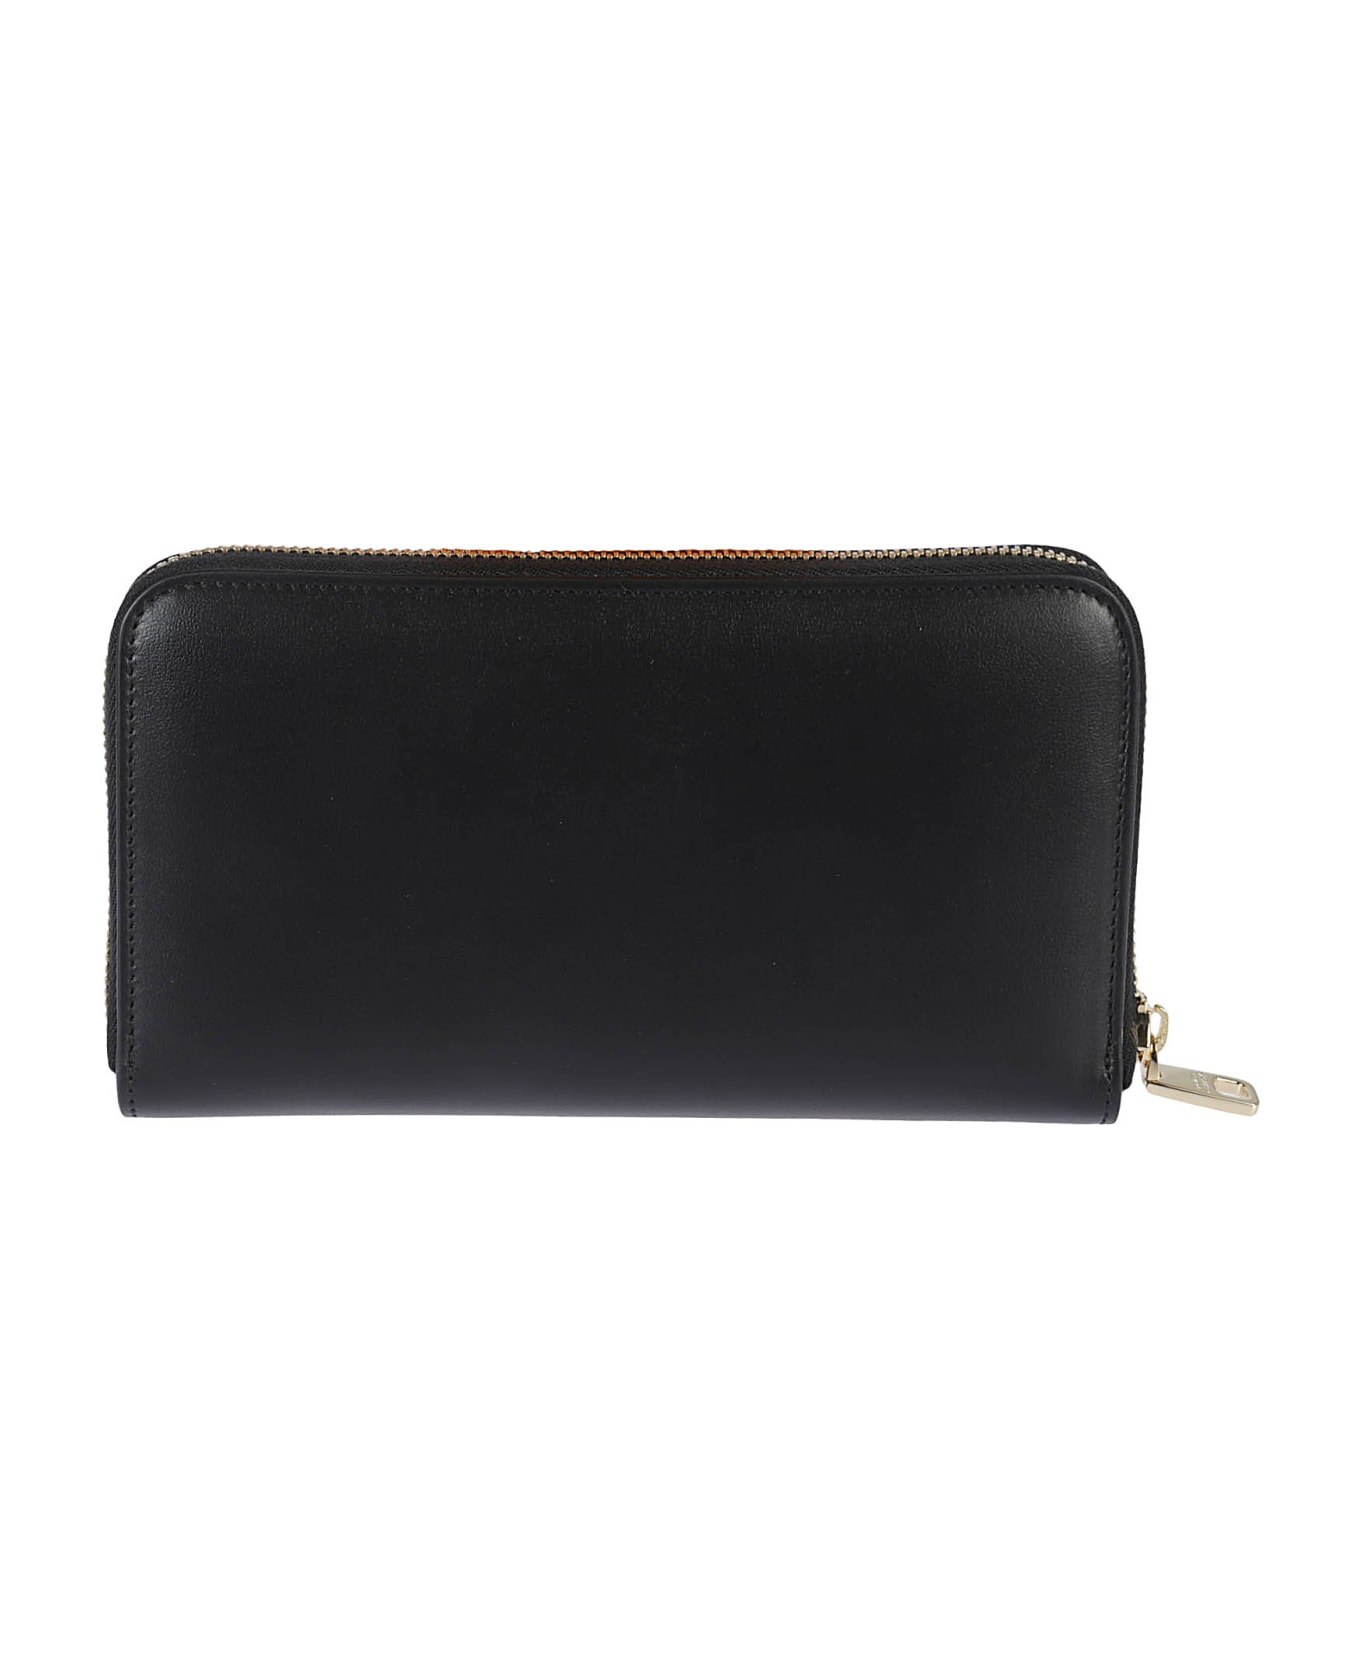 Dolce bag & Gabbana Zip-around Leather Zip-around Wallet - Black